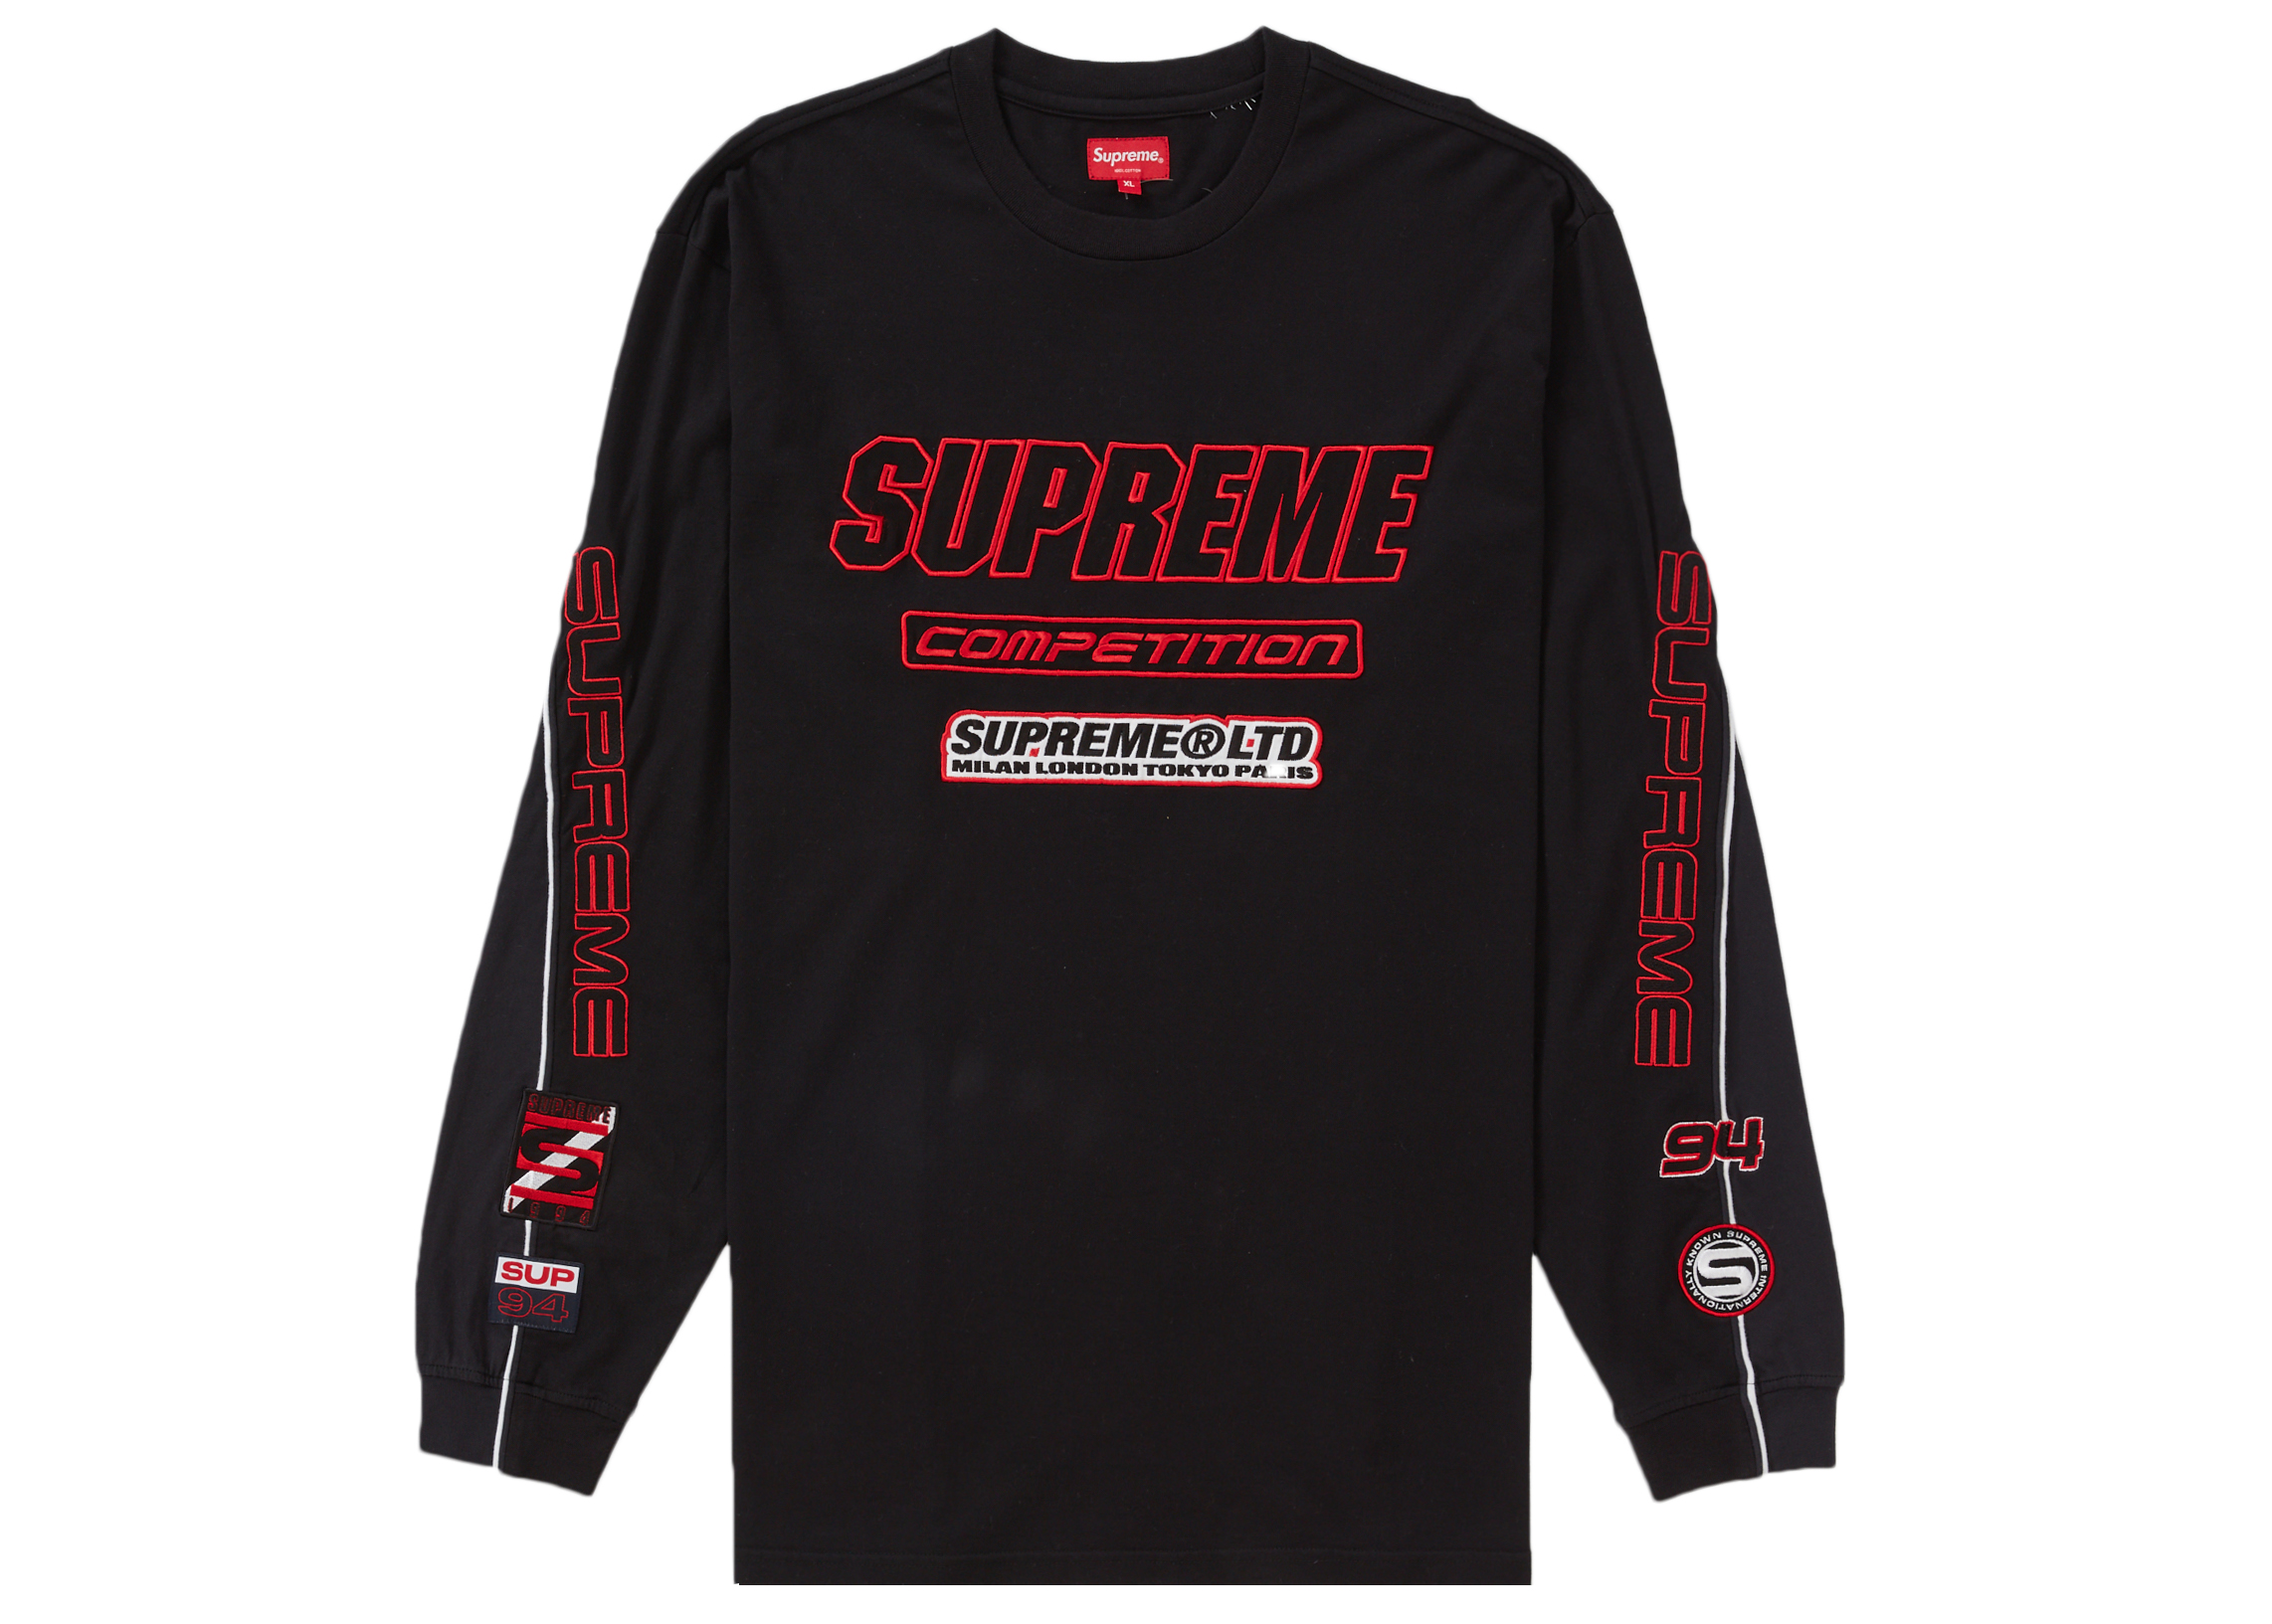 Supreme Competition L/S Top Black